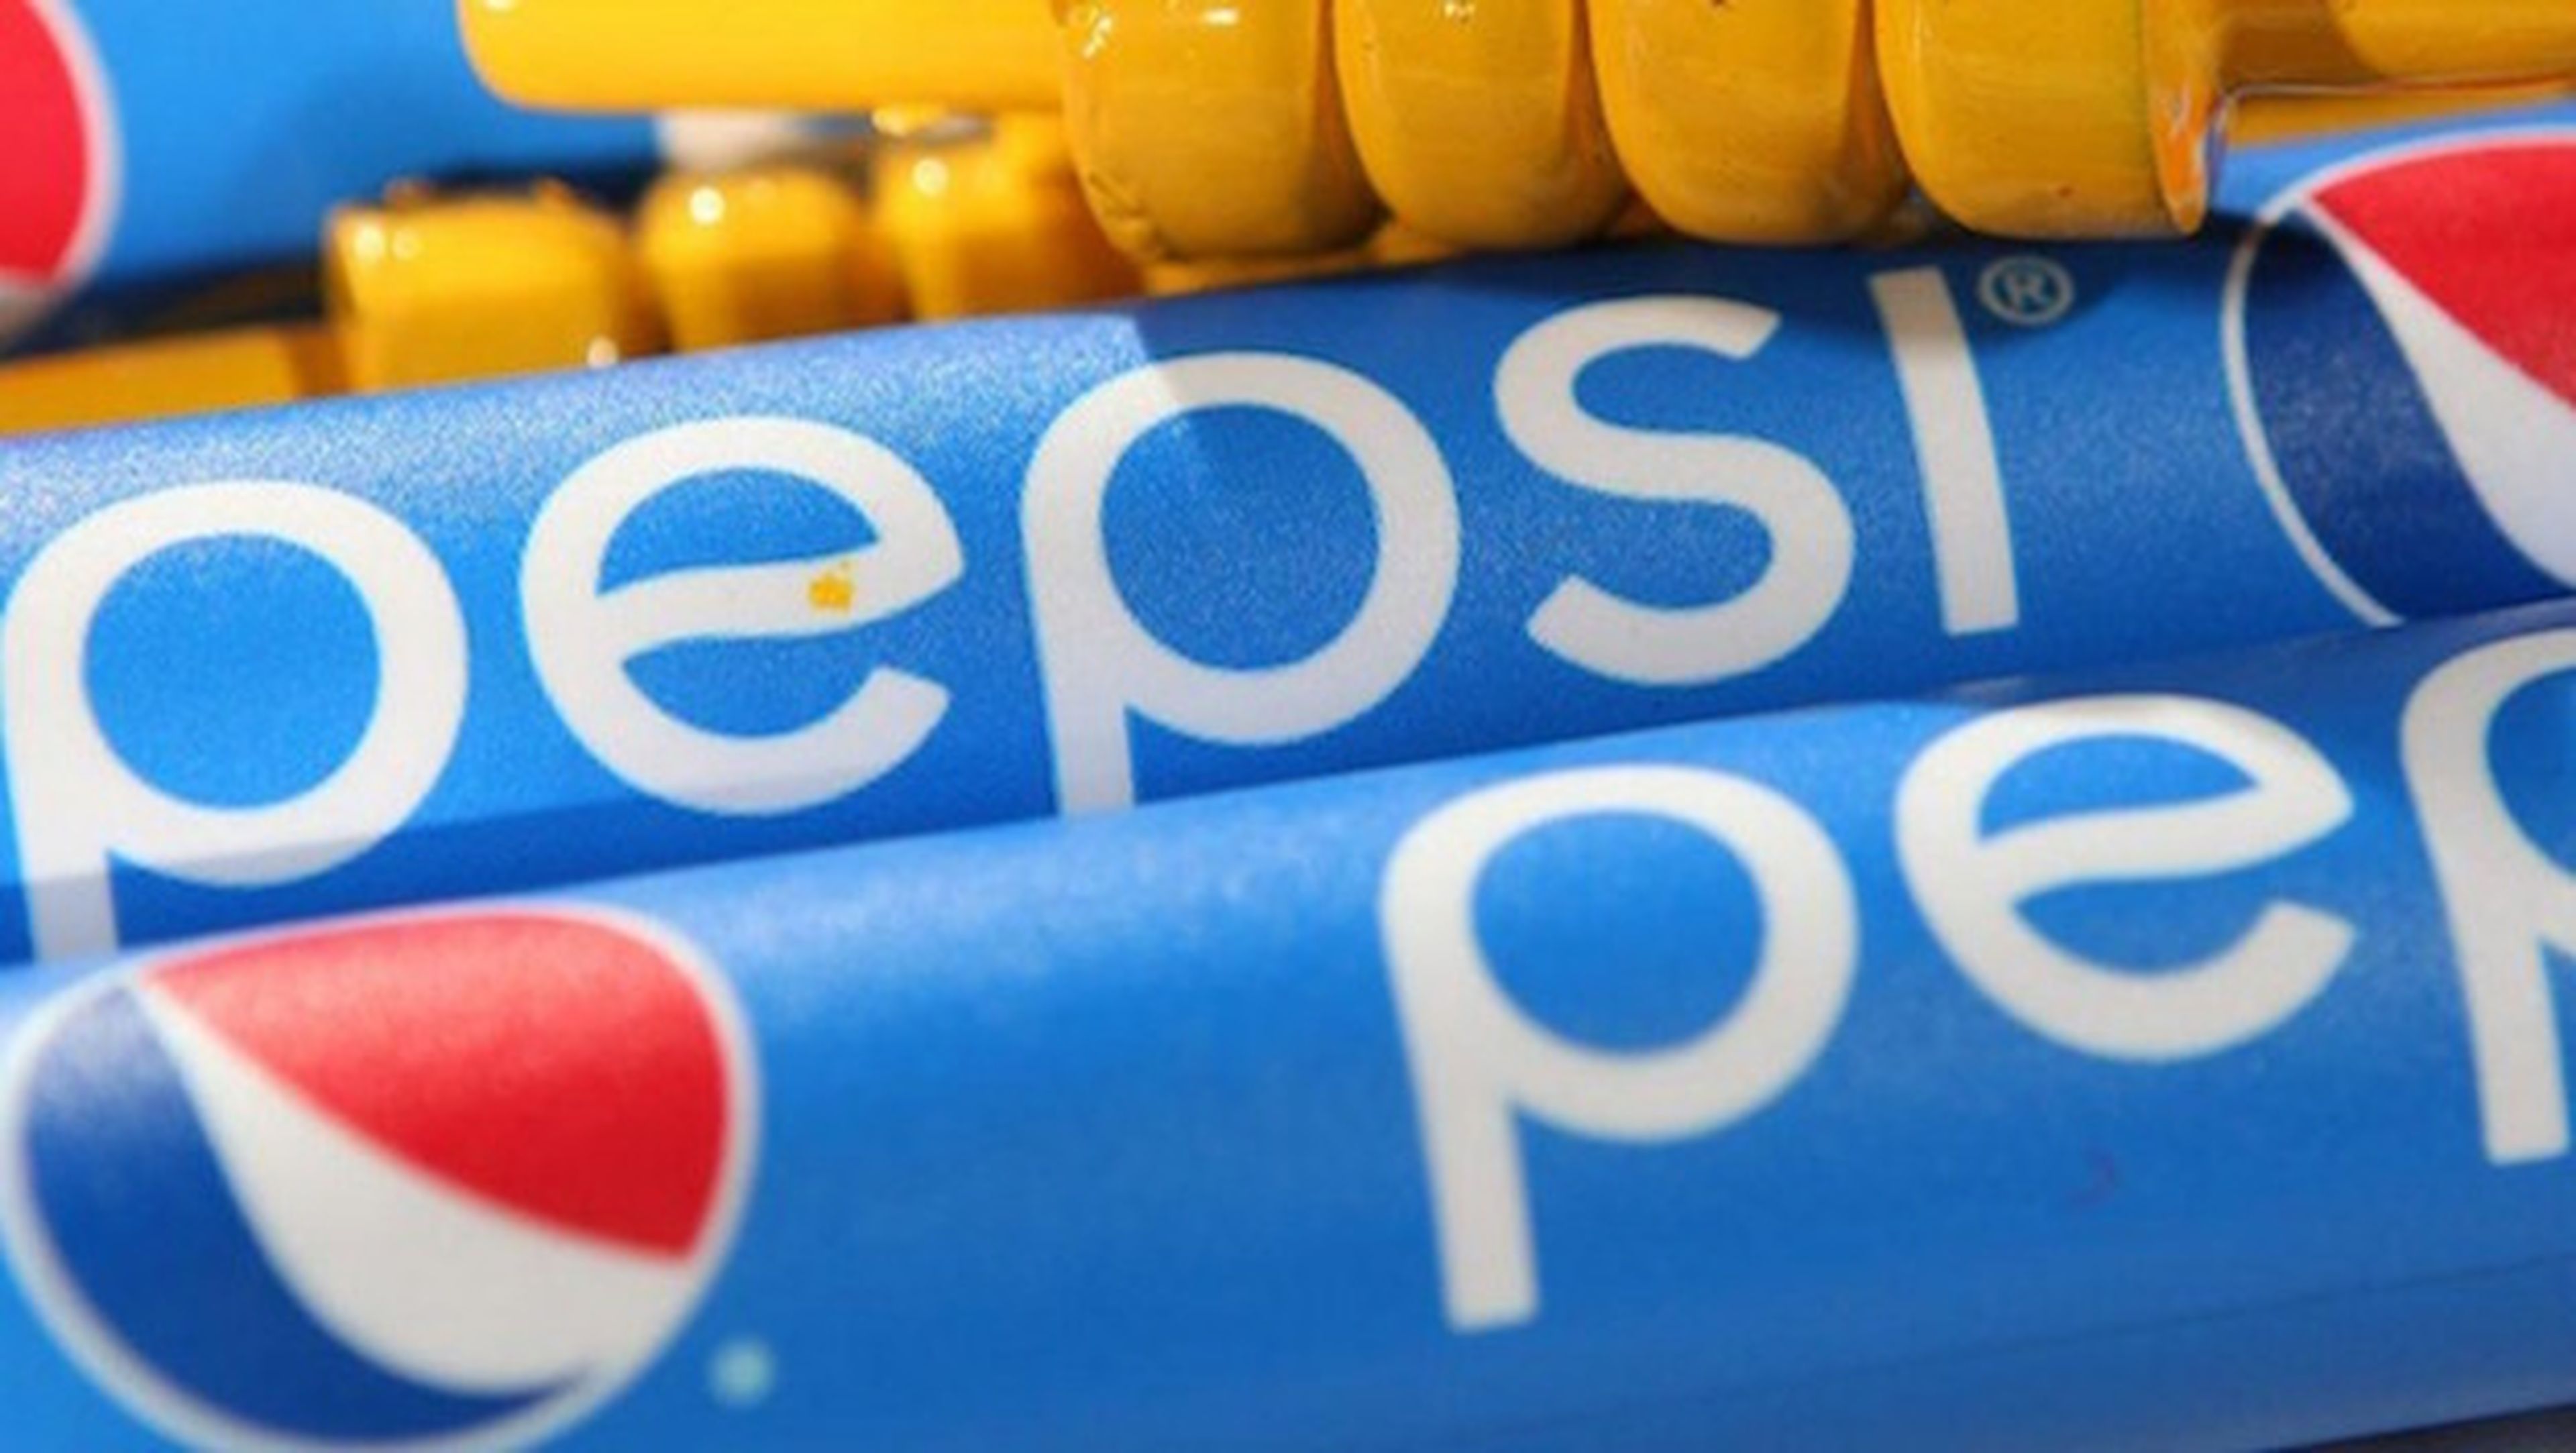 Pepsi podría lanzar su propio teléfono Android el 20 de octubre